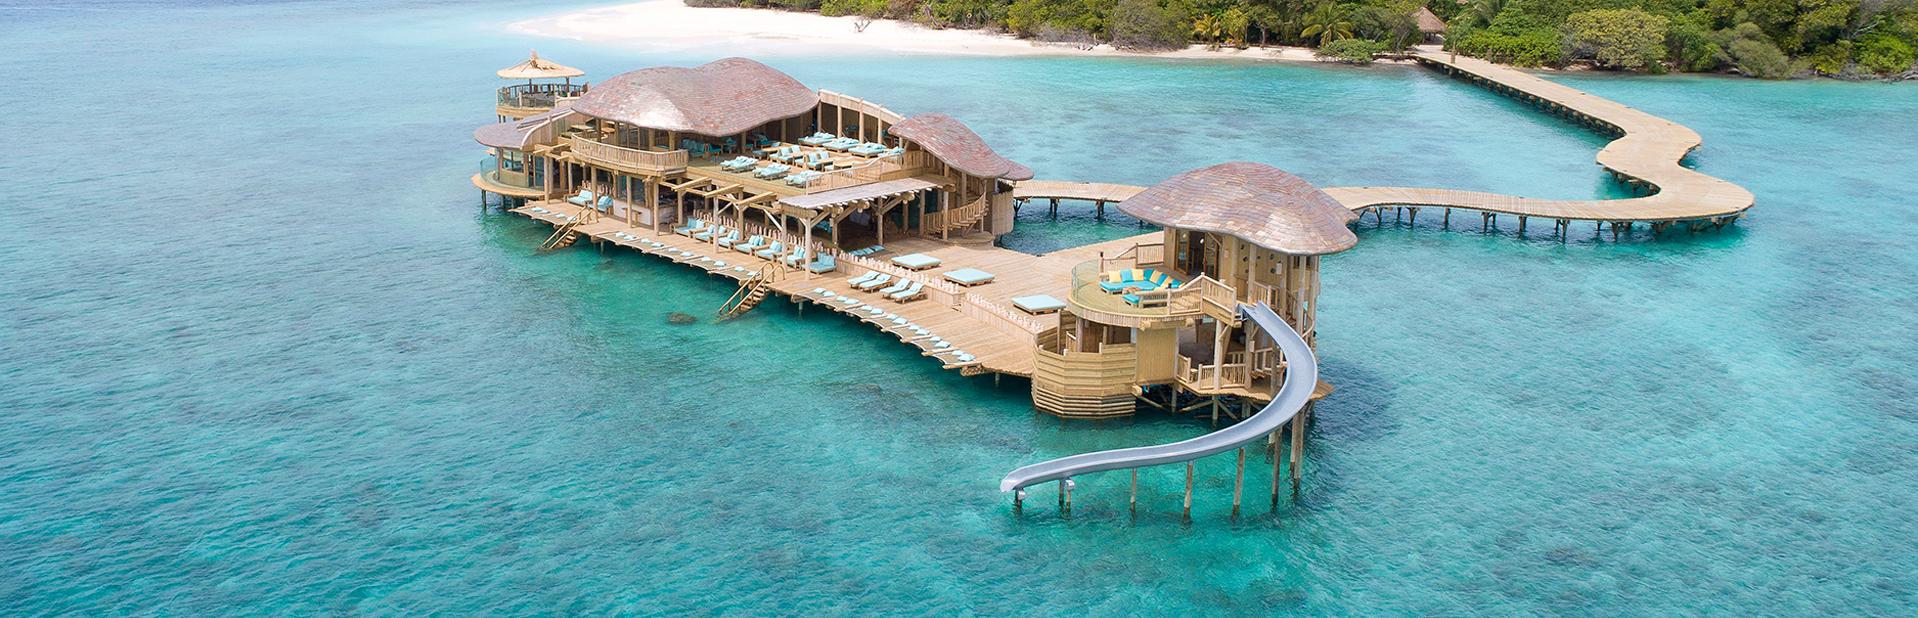 Soneva Fushi Resort Maldives 5 Мальдивы